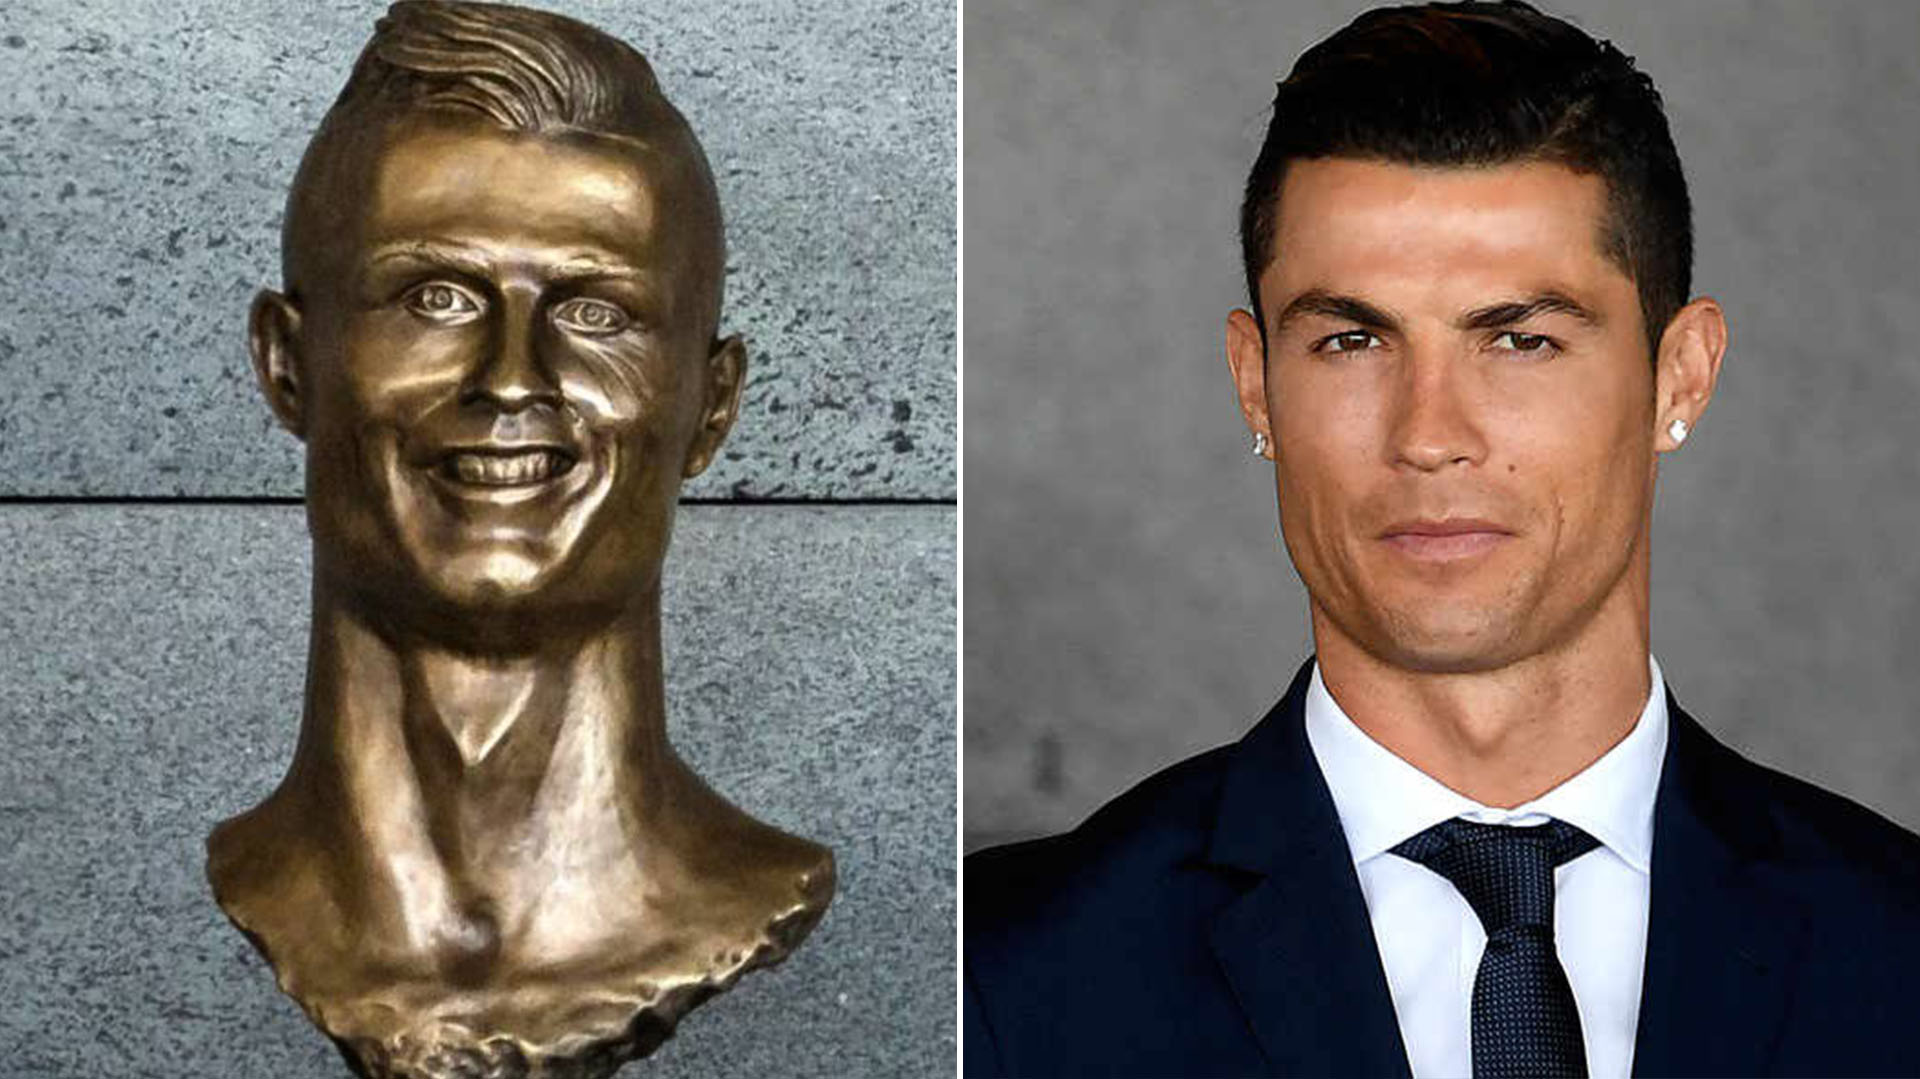 El busto de Cristiano Ronaldo en Madeira que finalmente fue reemplazado